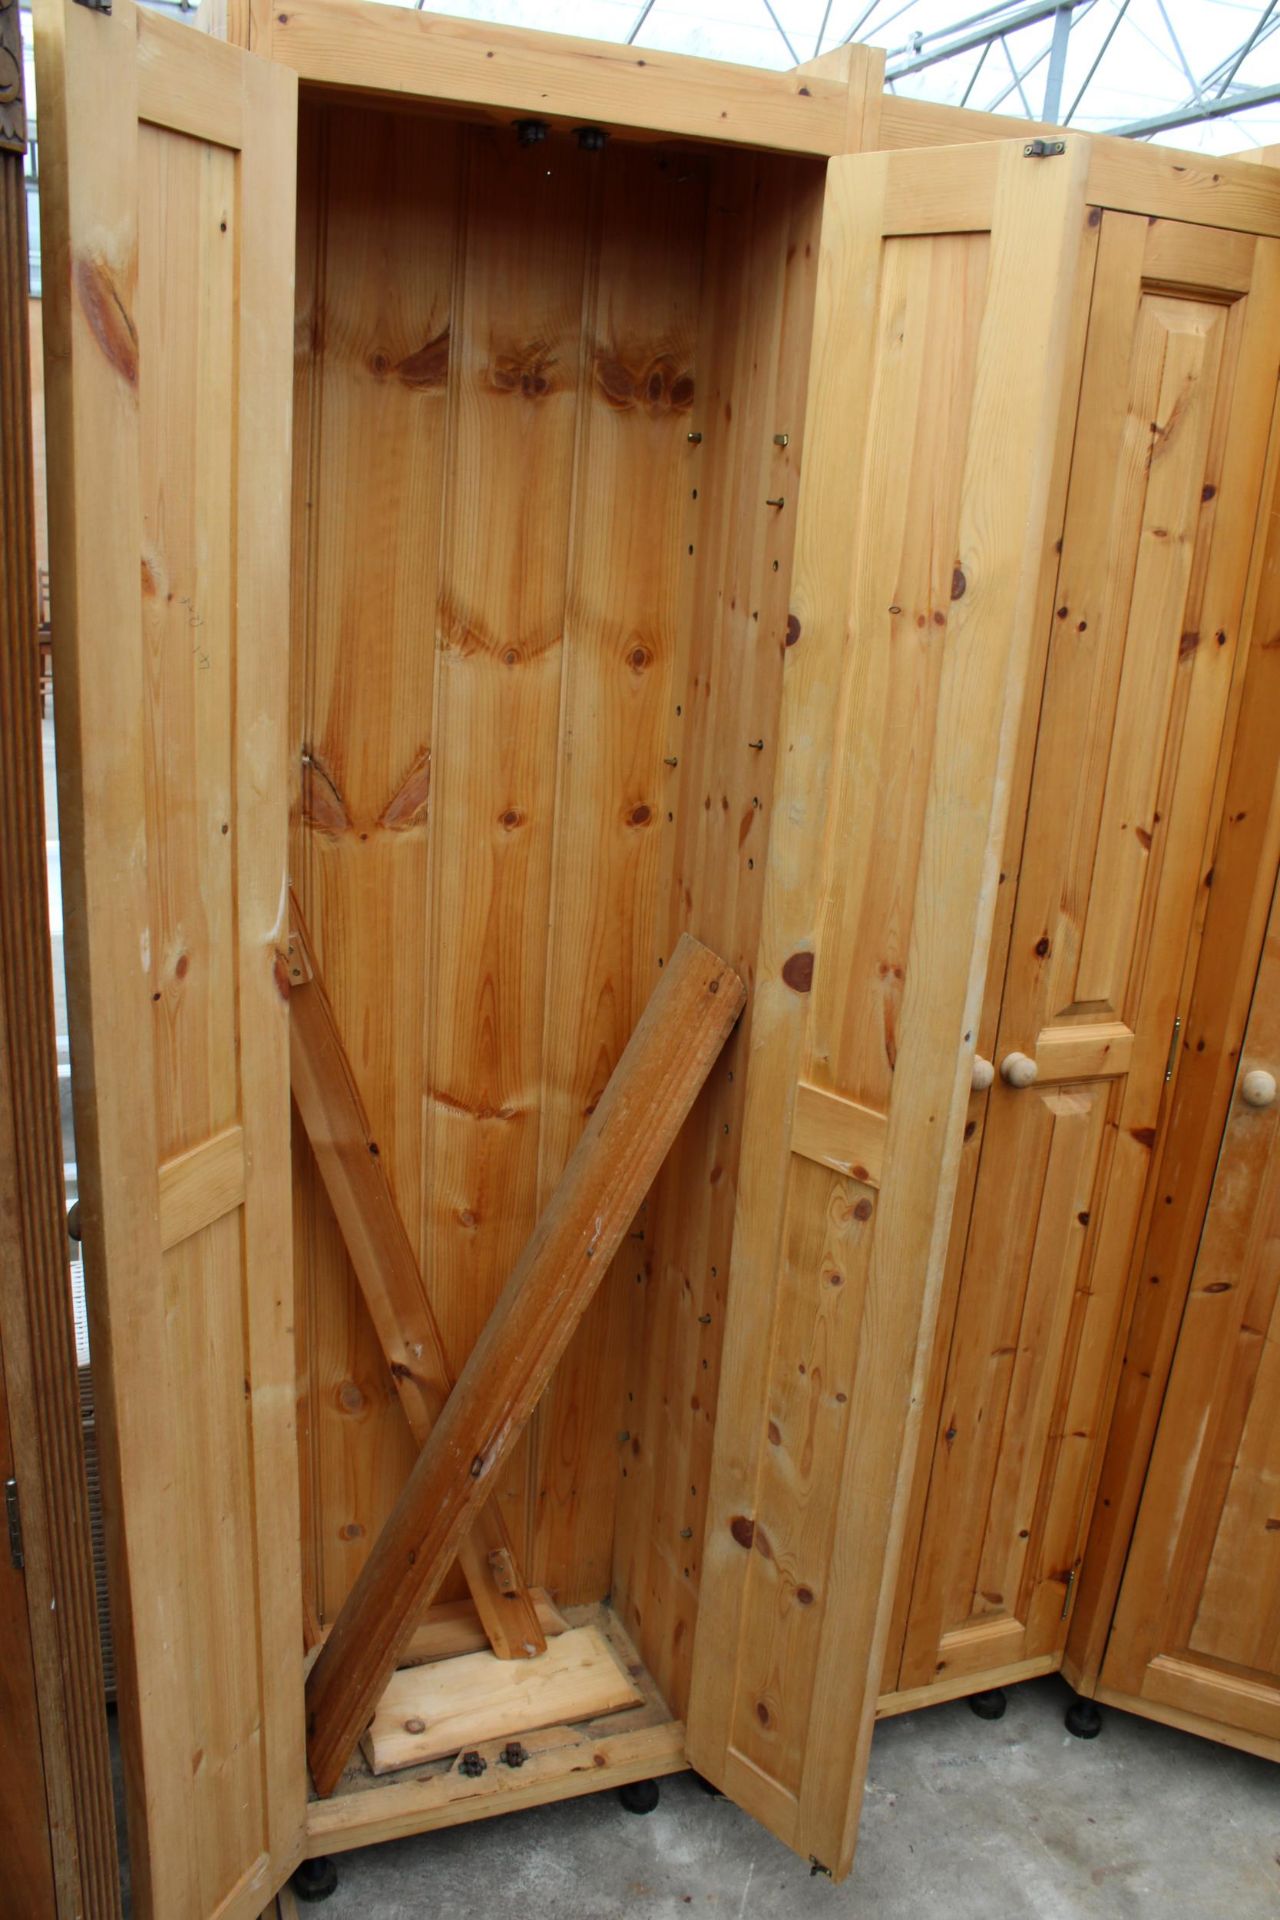 A MODERN PINE FIVE DOOR WARDROBE WITH CORNER RETURN - Image 2 of 3